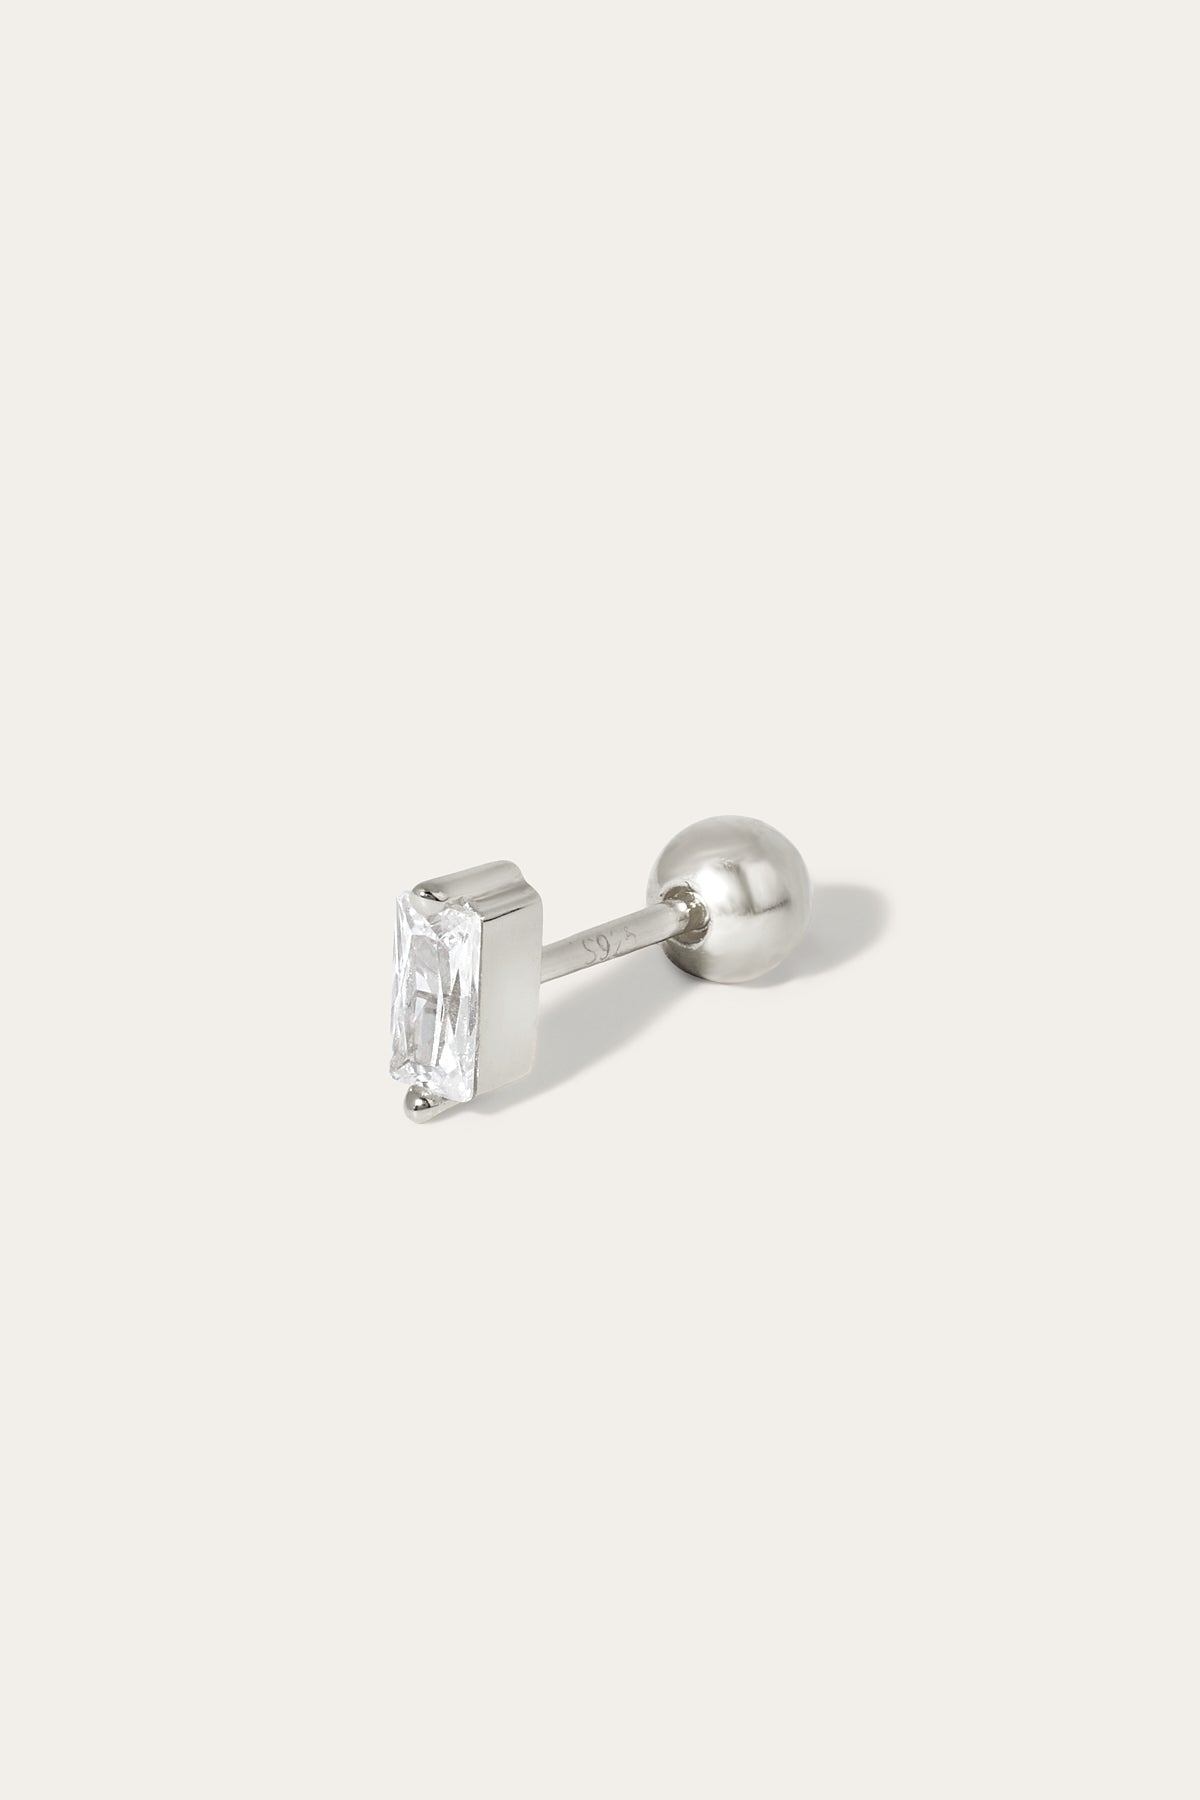 Mini baguette sterling silver stud earring (ball screw)